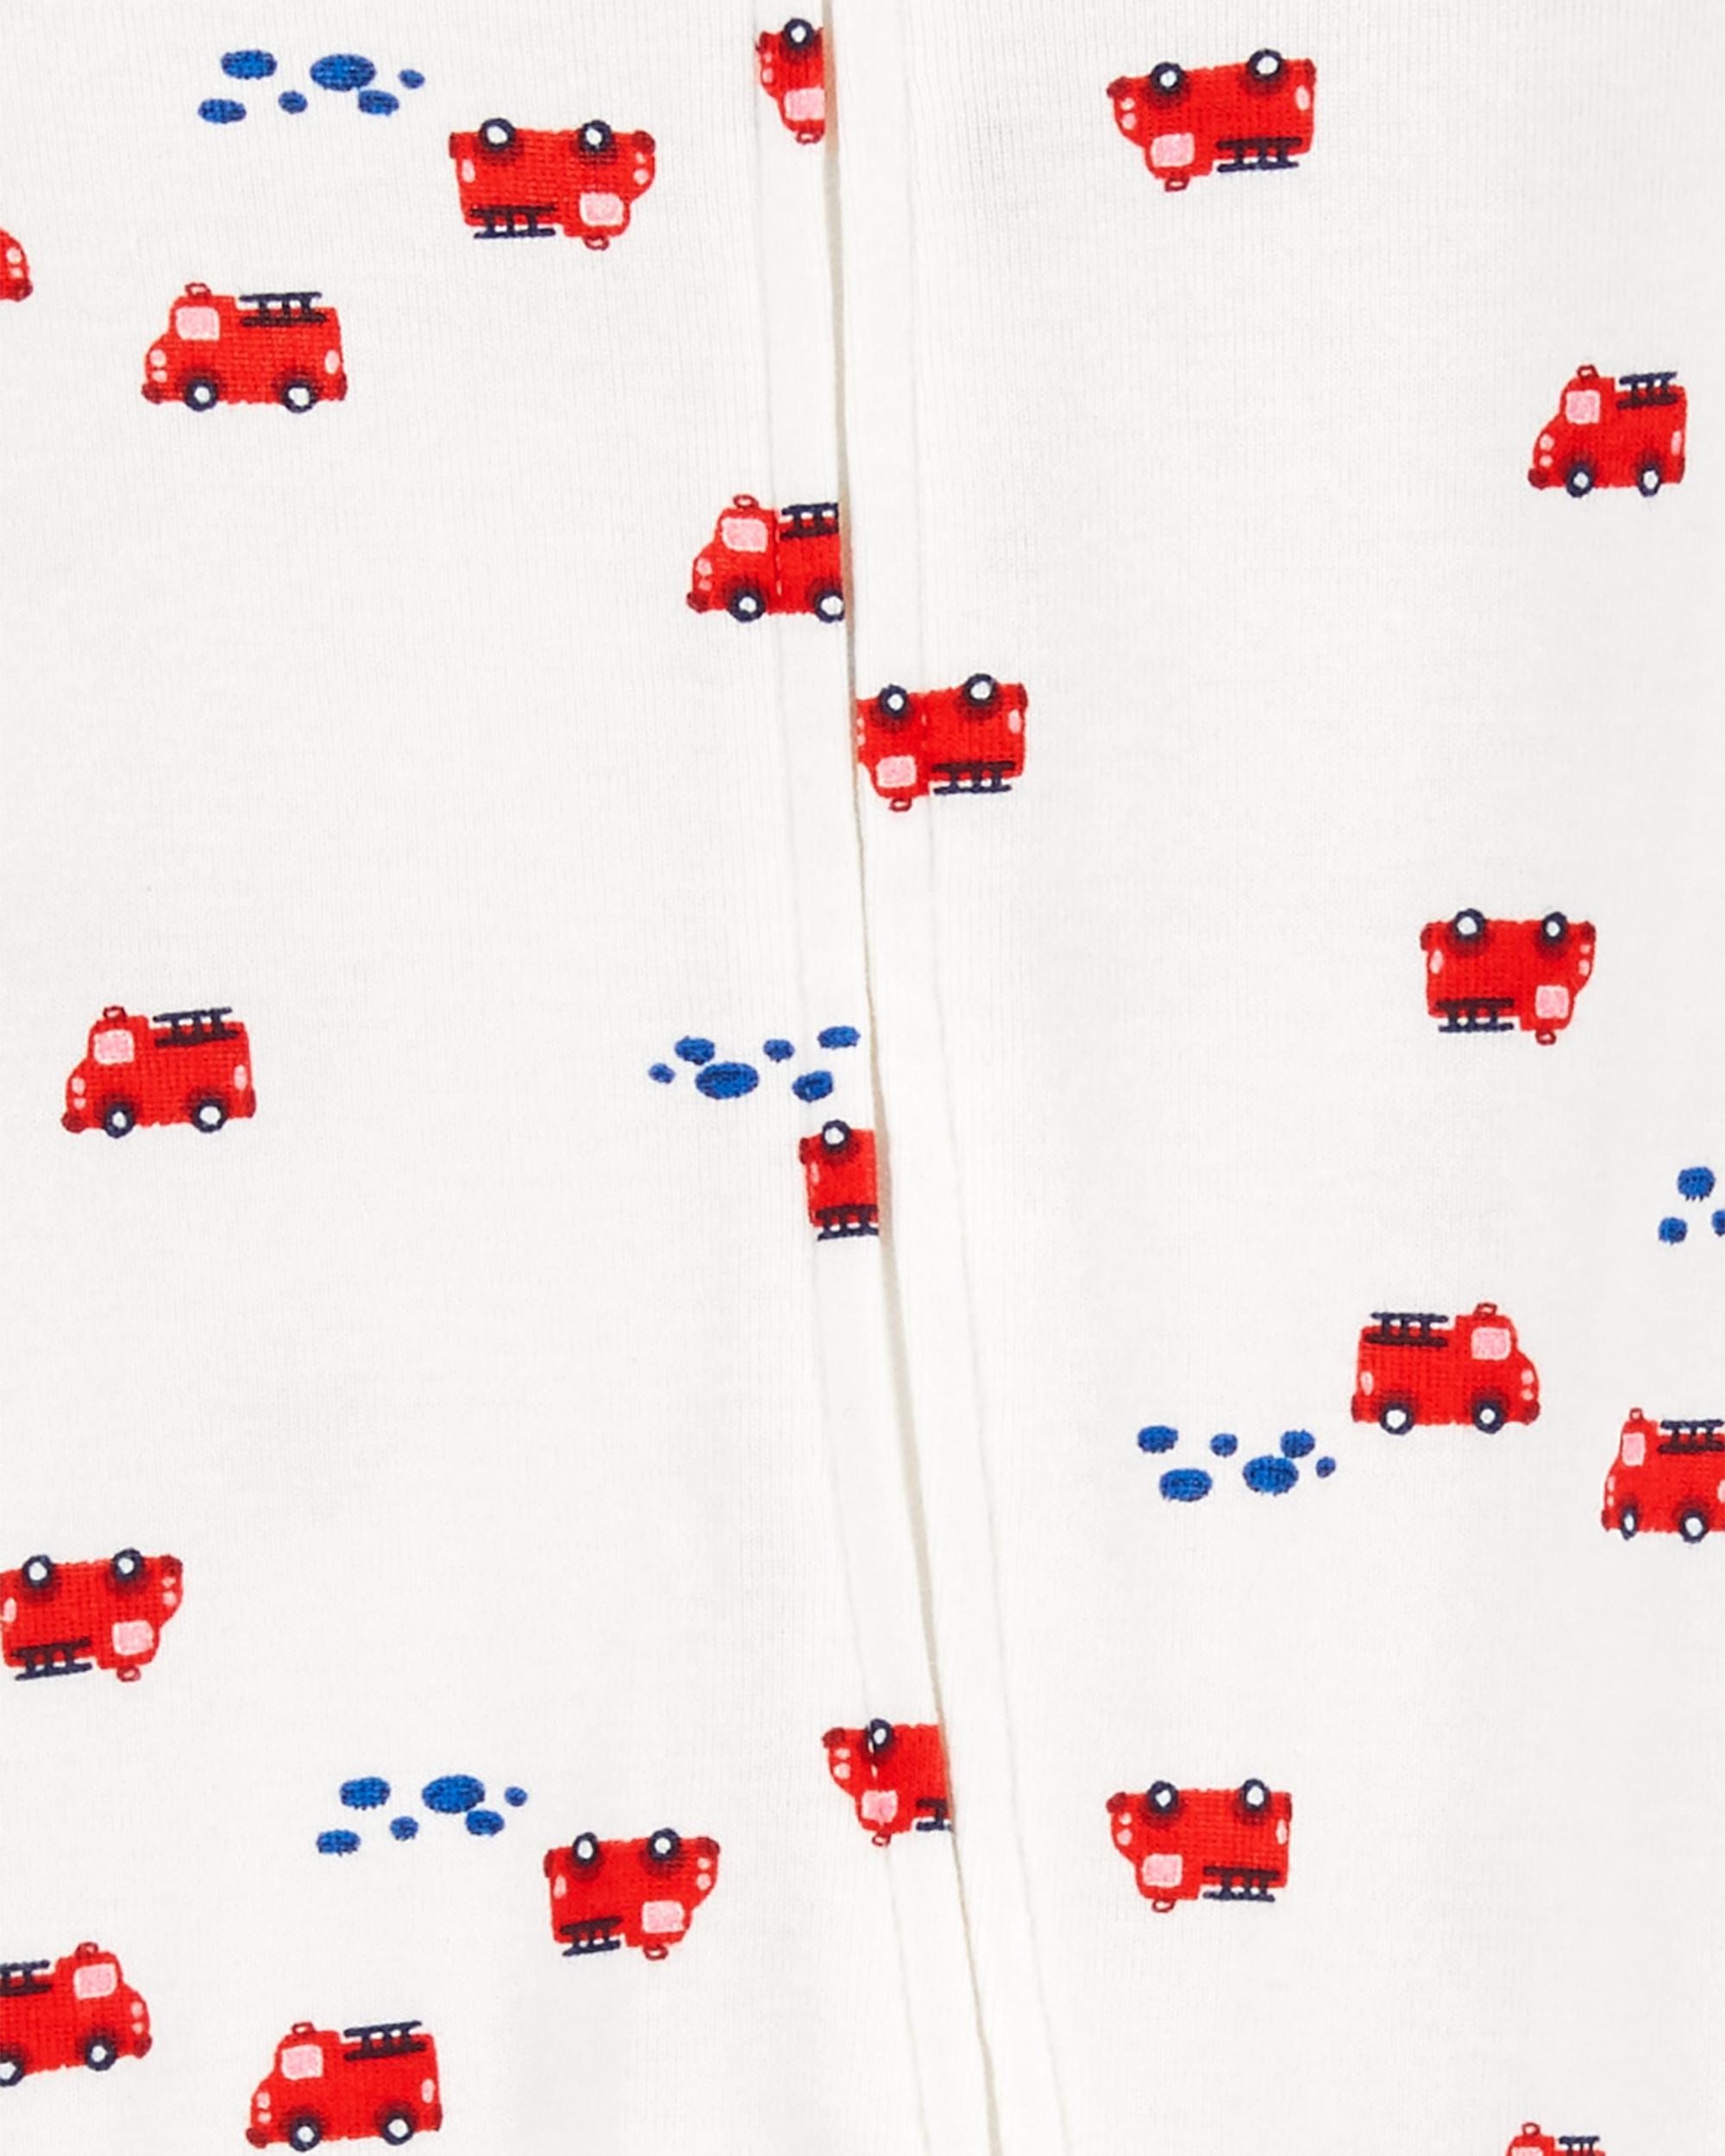 Baby 2-Pack 2-Way Zip Cotton Sleeper Pyjamas